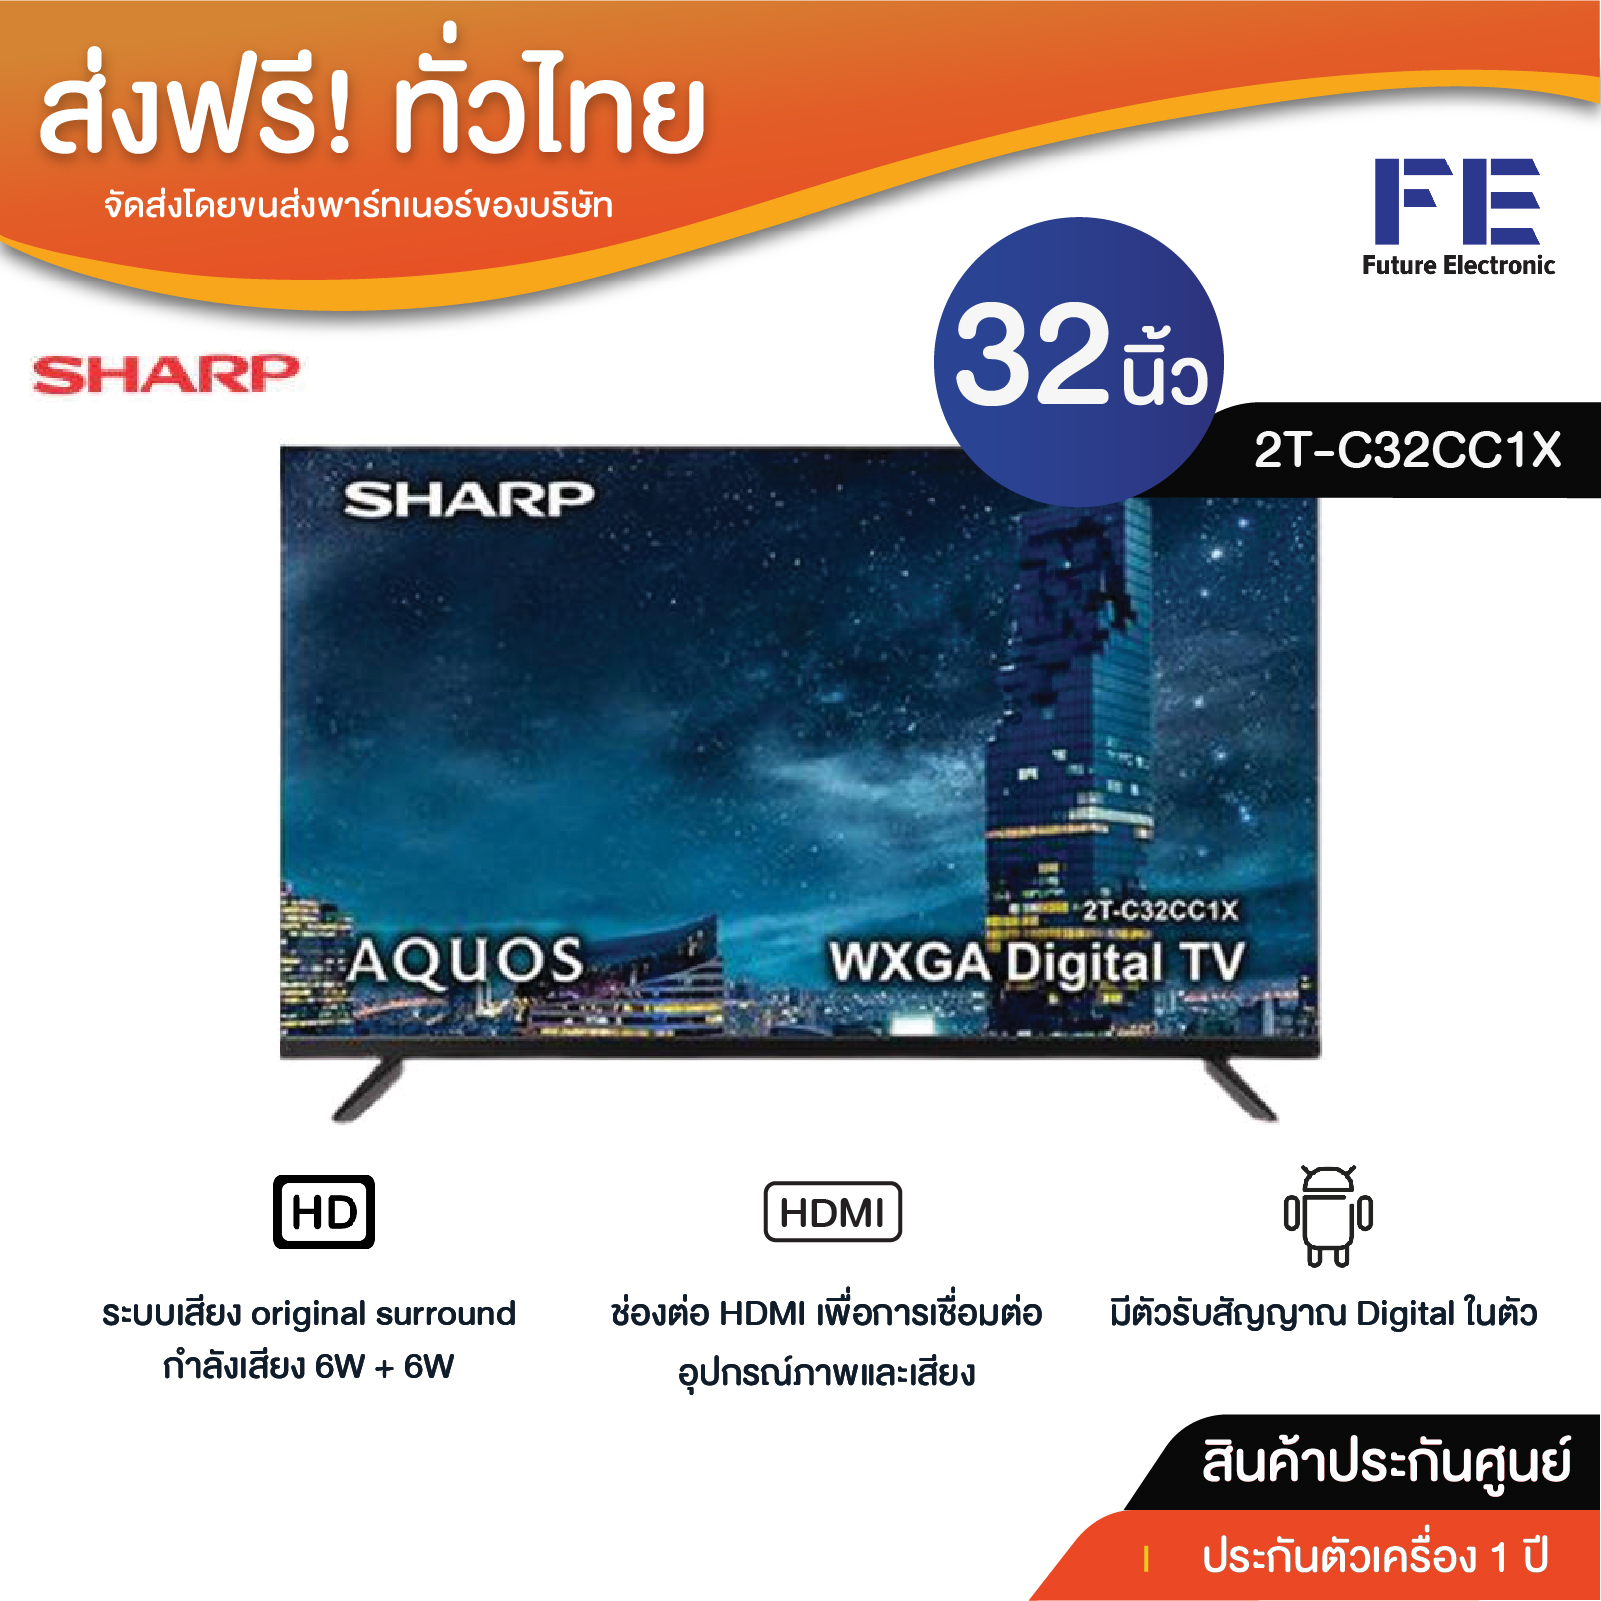 SHARP DIGITAL LED HD TV รุ่น 2T-C32CC1X ขนาด 32 นิ้ว ประกันศูนย์ 1 ปี ราคาถูก ของแท้ ประกัน มีช่อง HDMI USB เสียงดี จัดส่งฟรีทั่วไทย